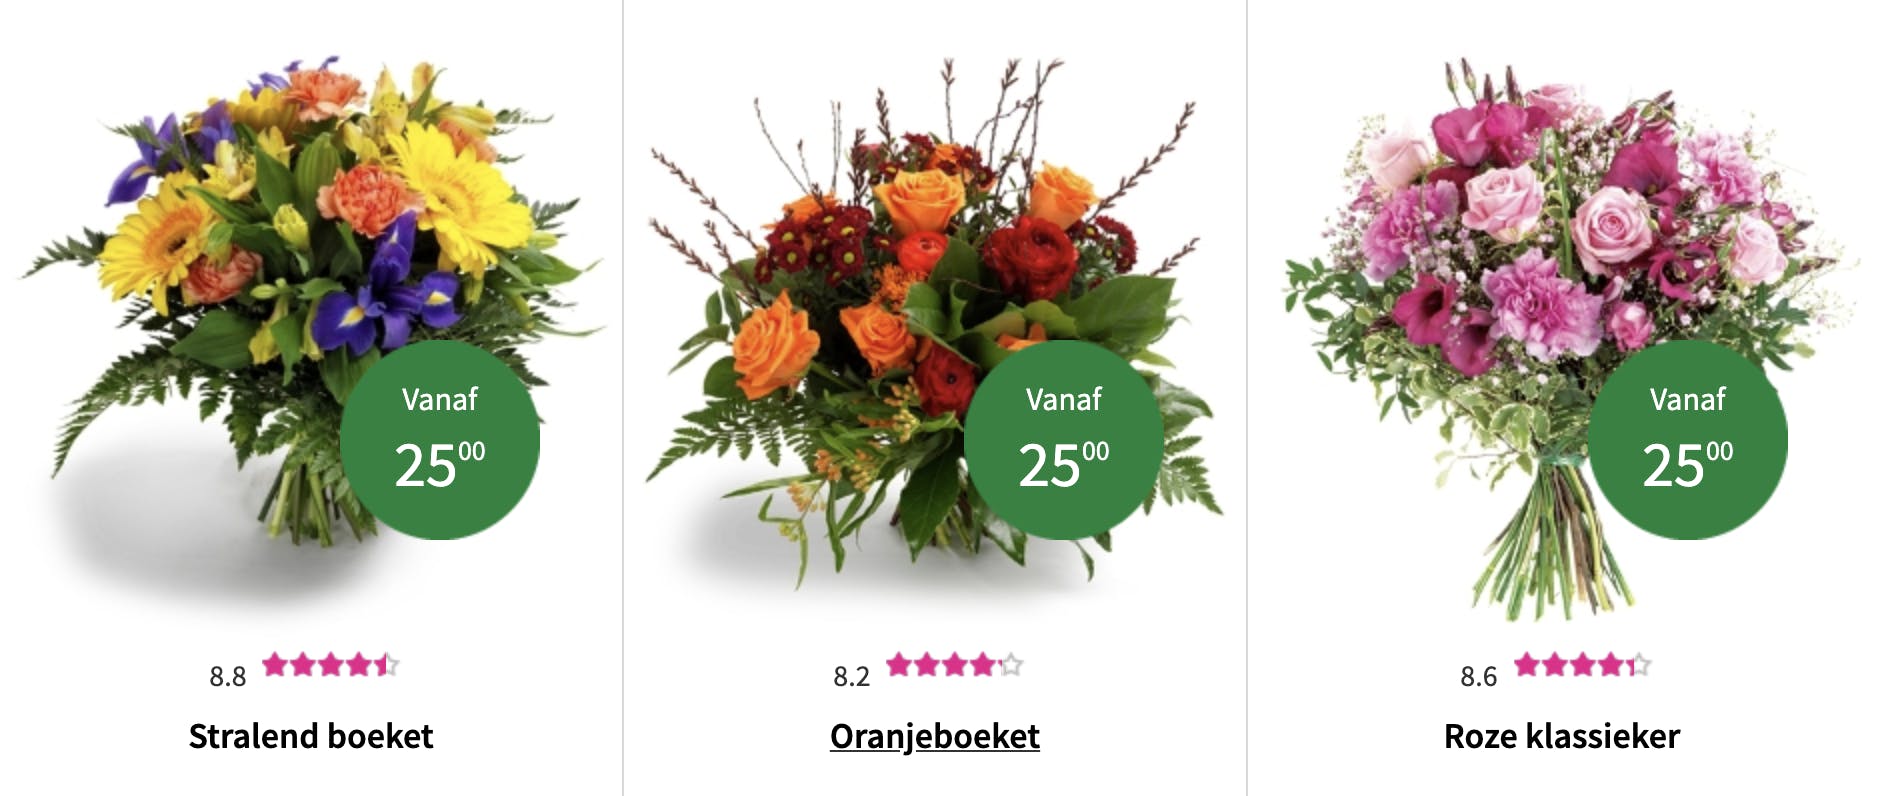 Hoe wens jij een fijne Moederdag? Inspirerende Moederdag kaart teksten en berichten. Bestel eenvoudig en snel bloemen voor Moederdag in Antwerpen bij Regiobloemist bloemen selectie.